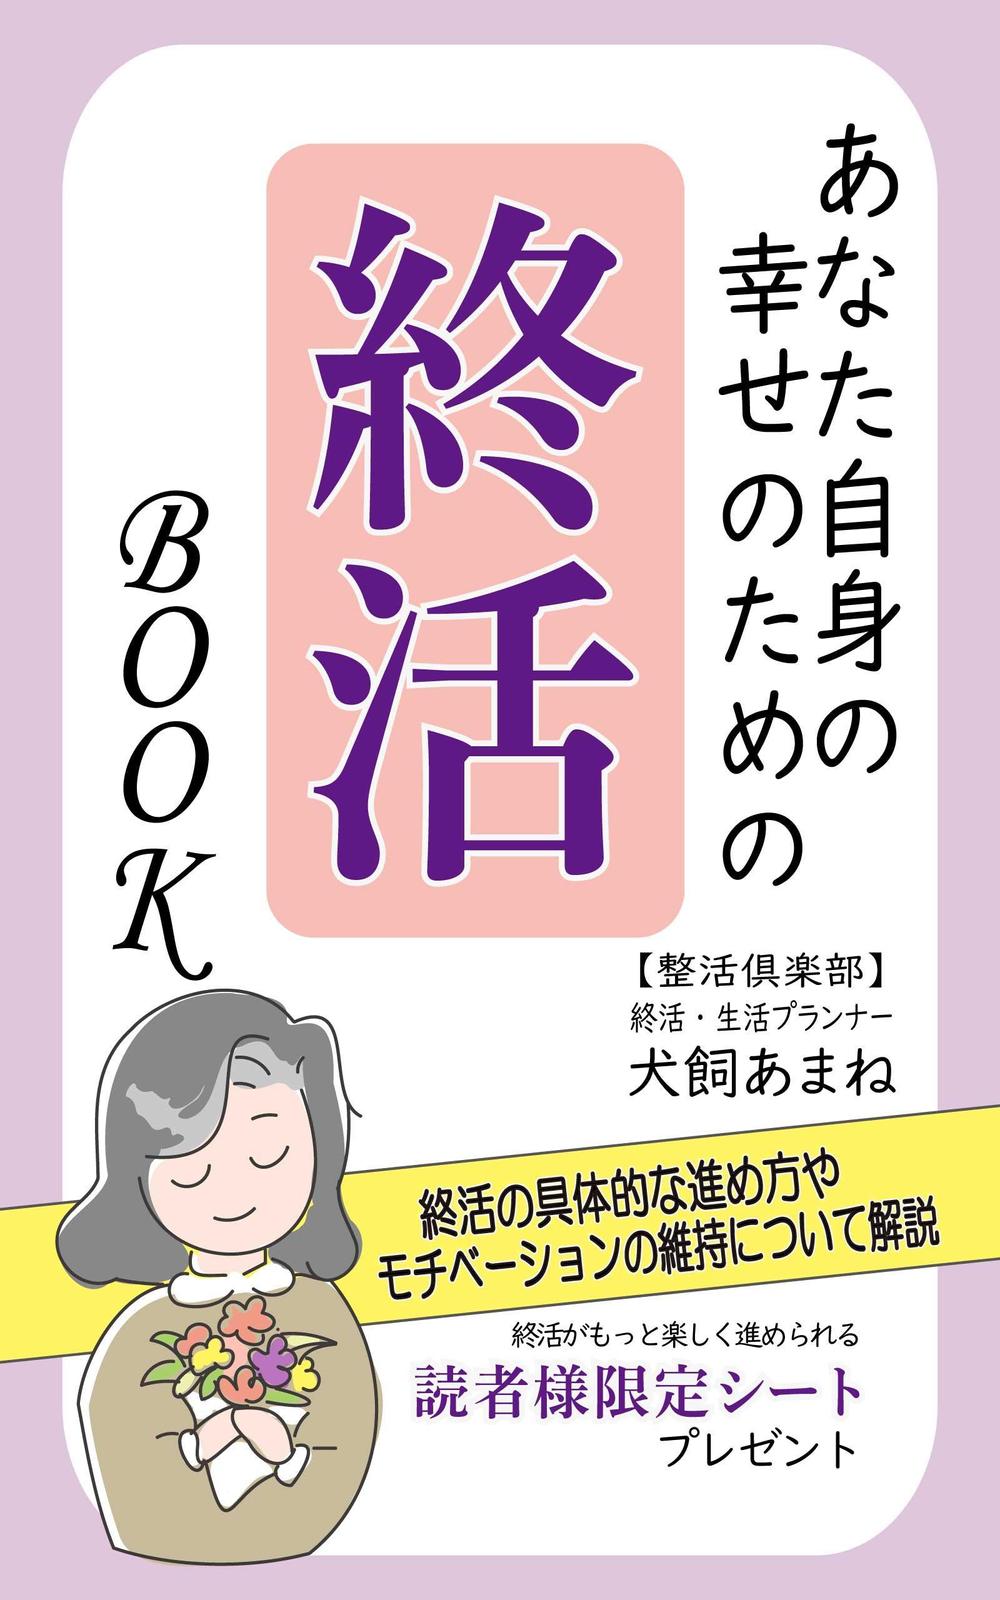 【参加賞あり〼】電子書籍 (Kindle) /表紙デザイン/女性向け終活書籍/のお願い